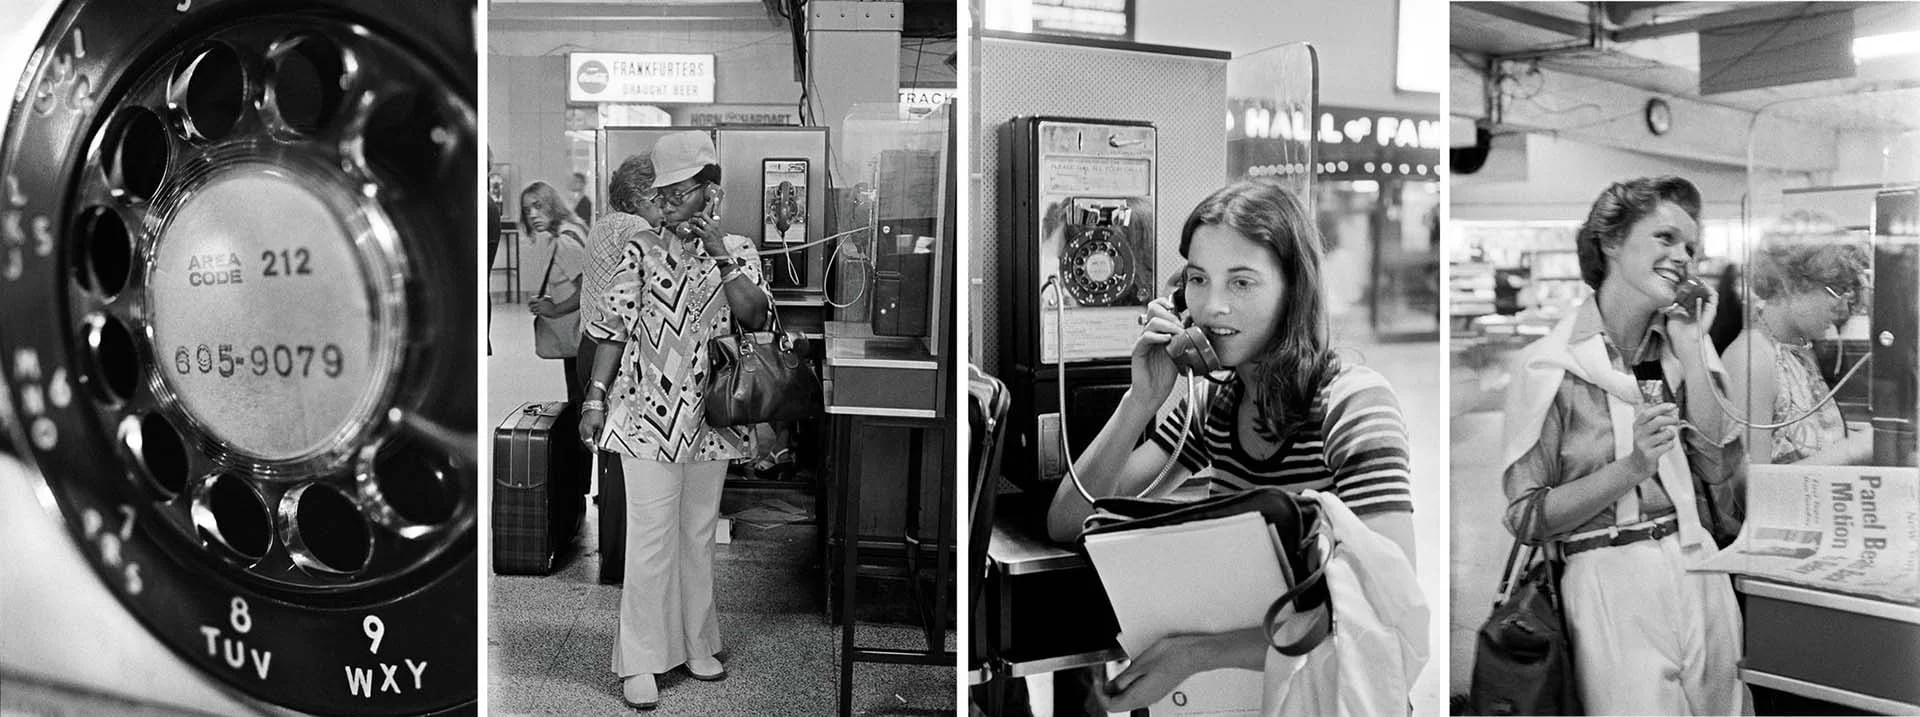 Usuarias del metro hablaban en el teléfono público más usado de la ciudad de Nueva York, ubicado en el piso inferior de la Estación Pensilvania, cerca de la cabina de información de Long Island Rail Road. 26 de julio de 1974. Credit Tyrone Dukes/The New York Times